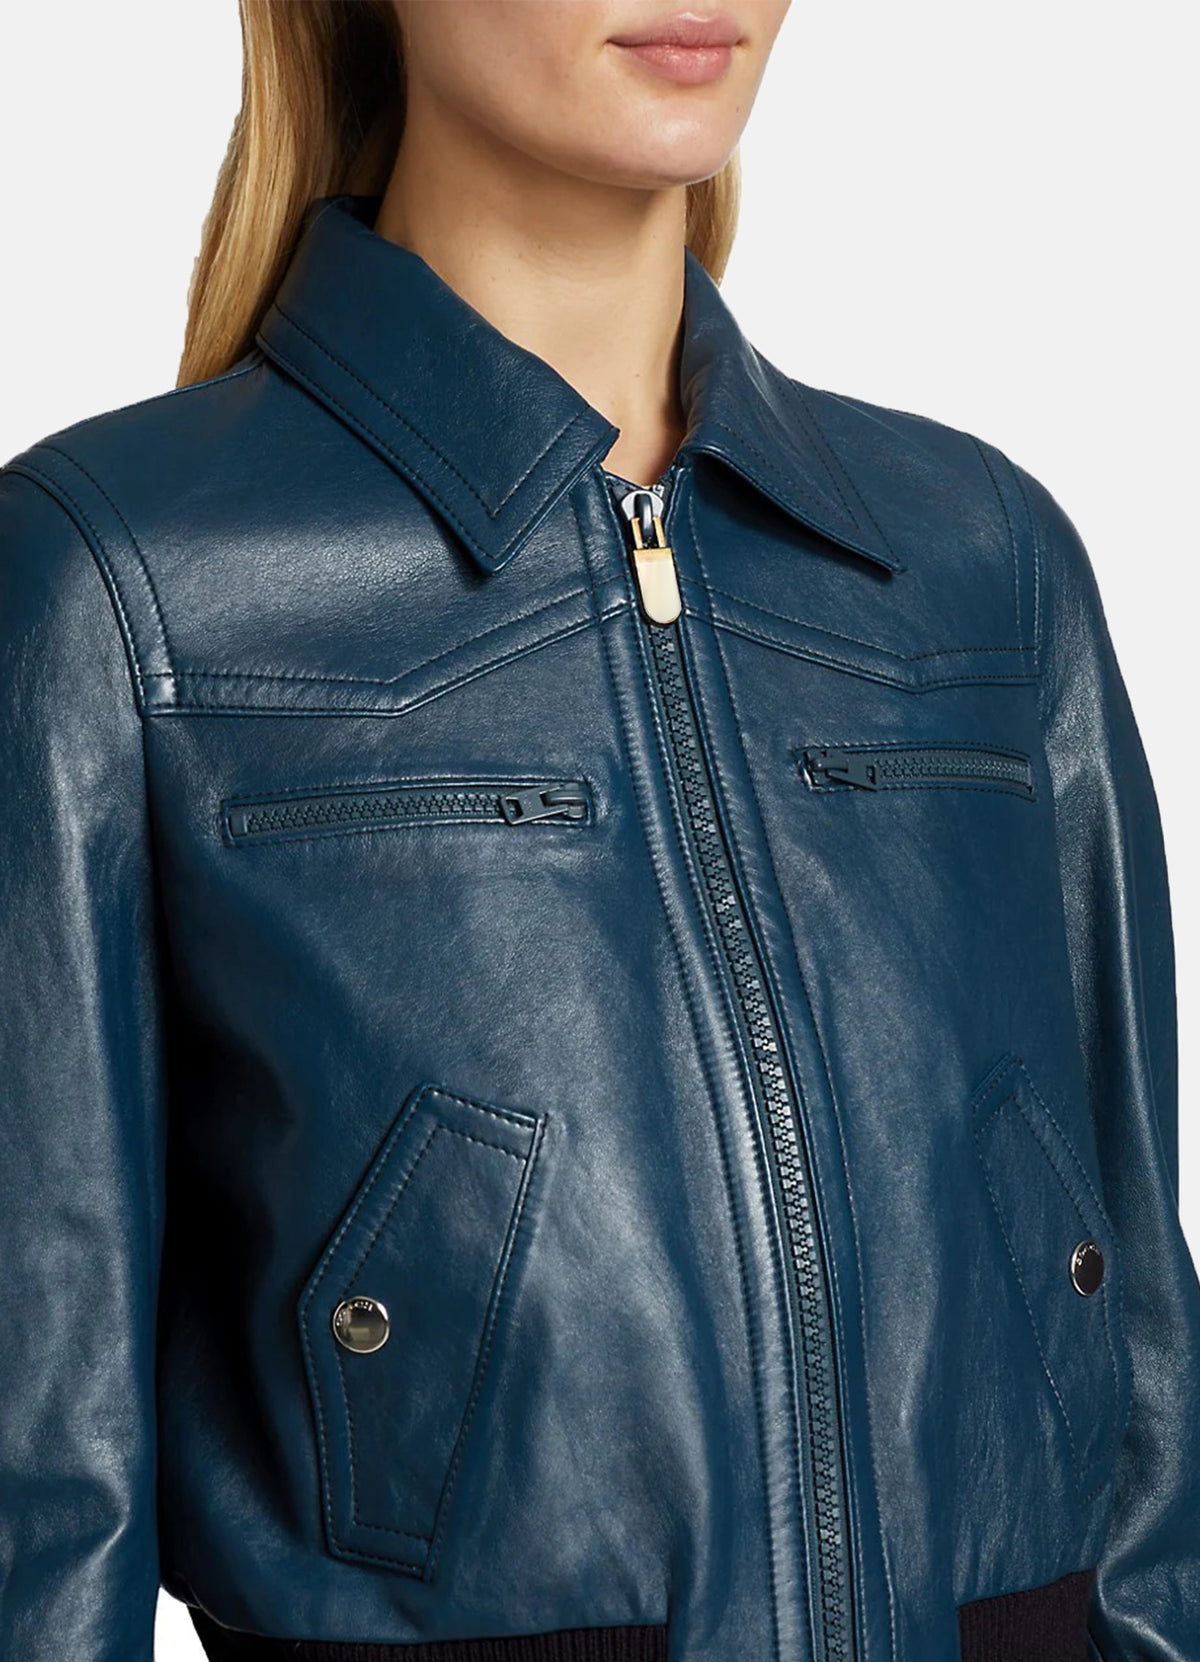 Womens Yale Blue Leather Bomber Jacket